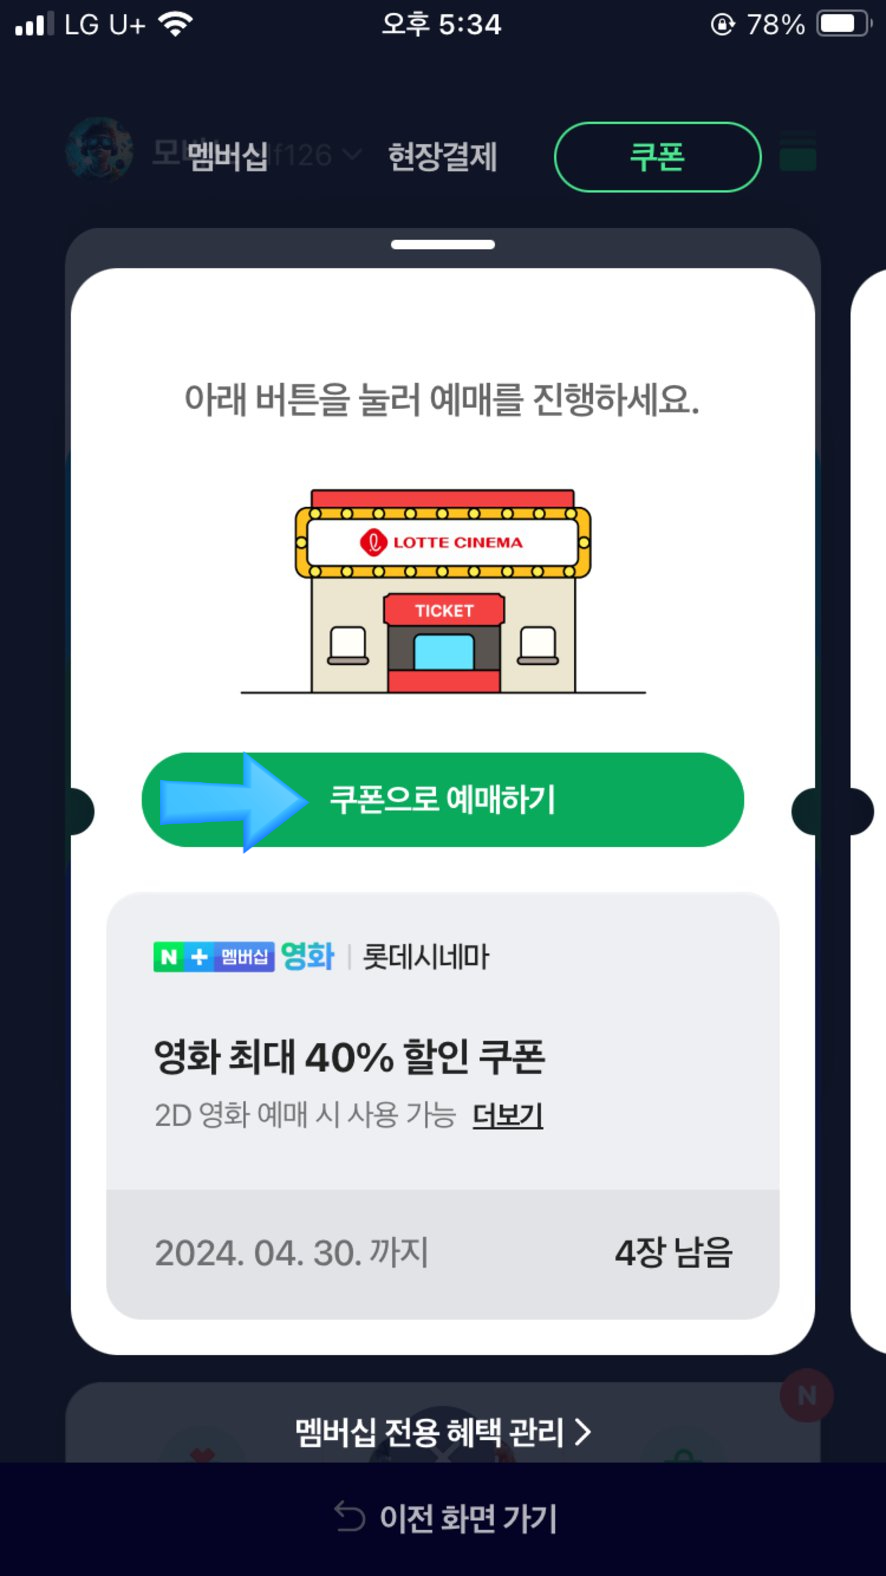 네이버 플러스 멤버십, 롯데시네마 영화 할인 예매하는 방법